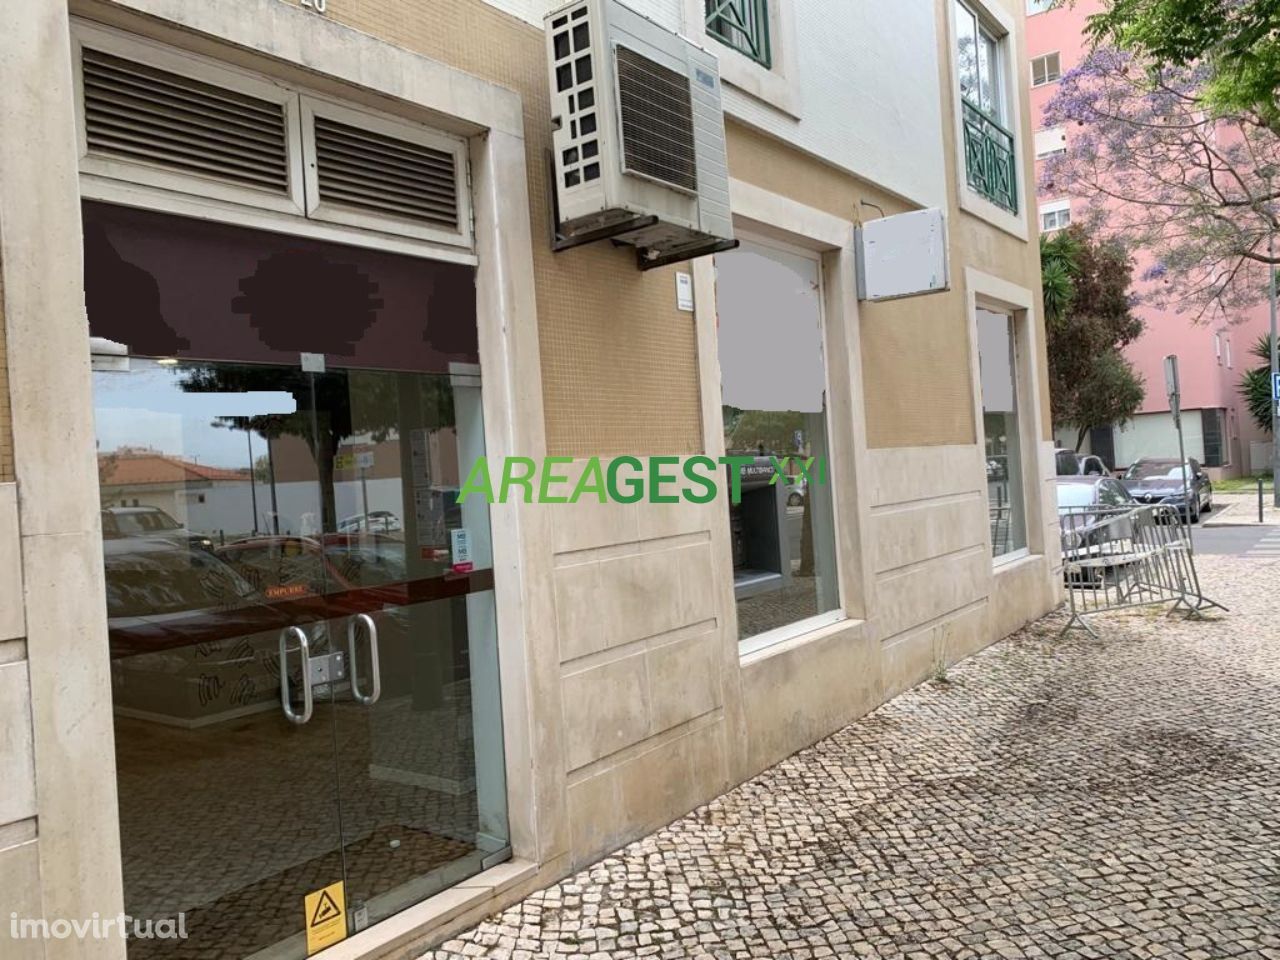 Loja para venda com rendimento, nas Laranjeiras, em Lisboa